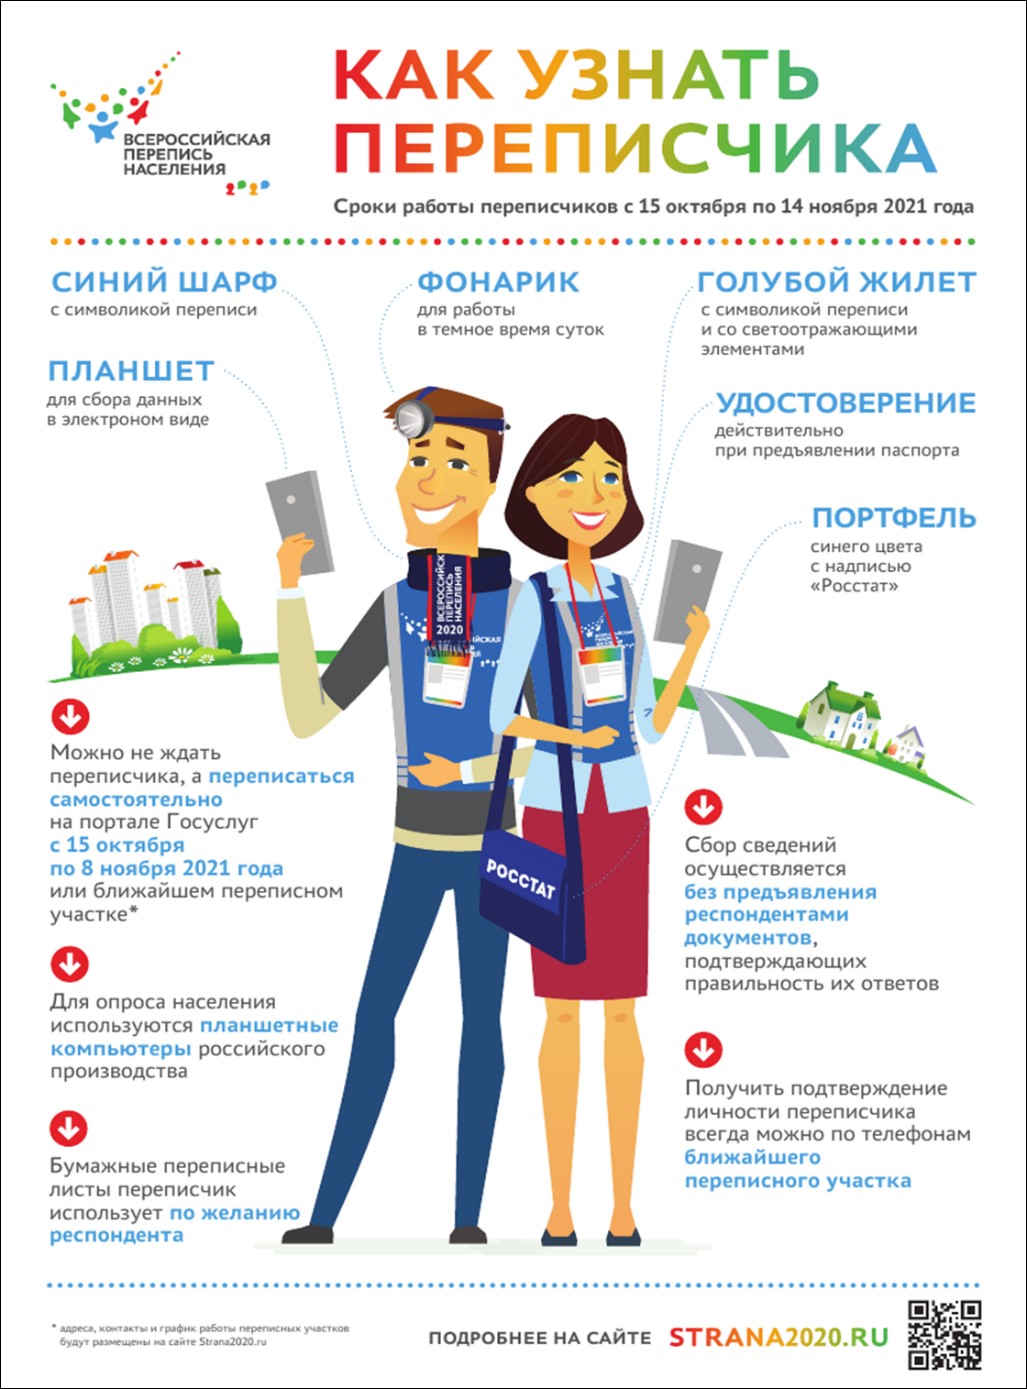 33 вопроса будет задано жителям России - Мэрия Новосибирска